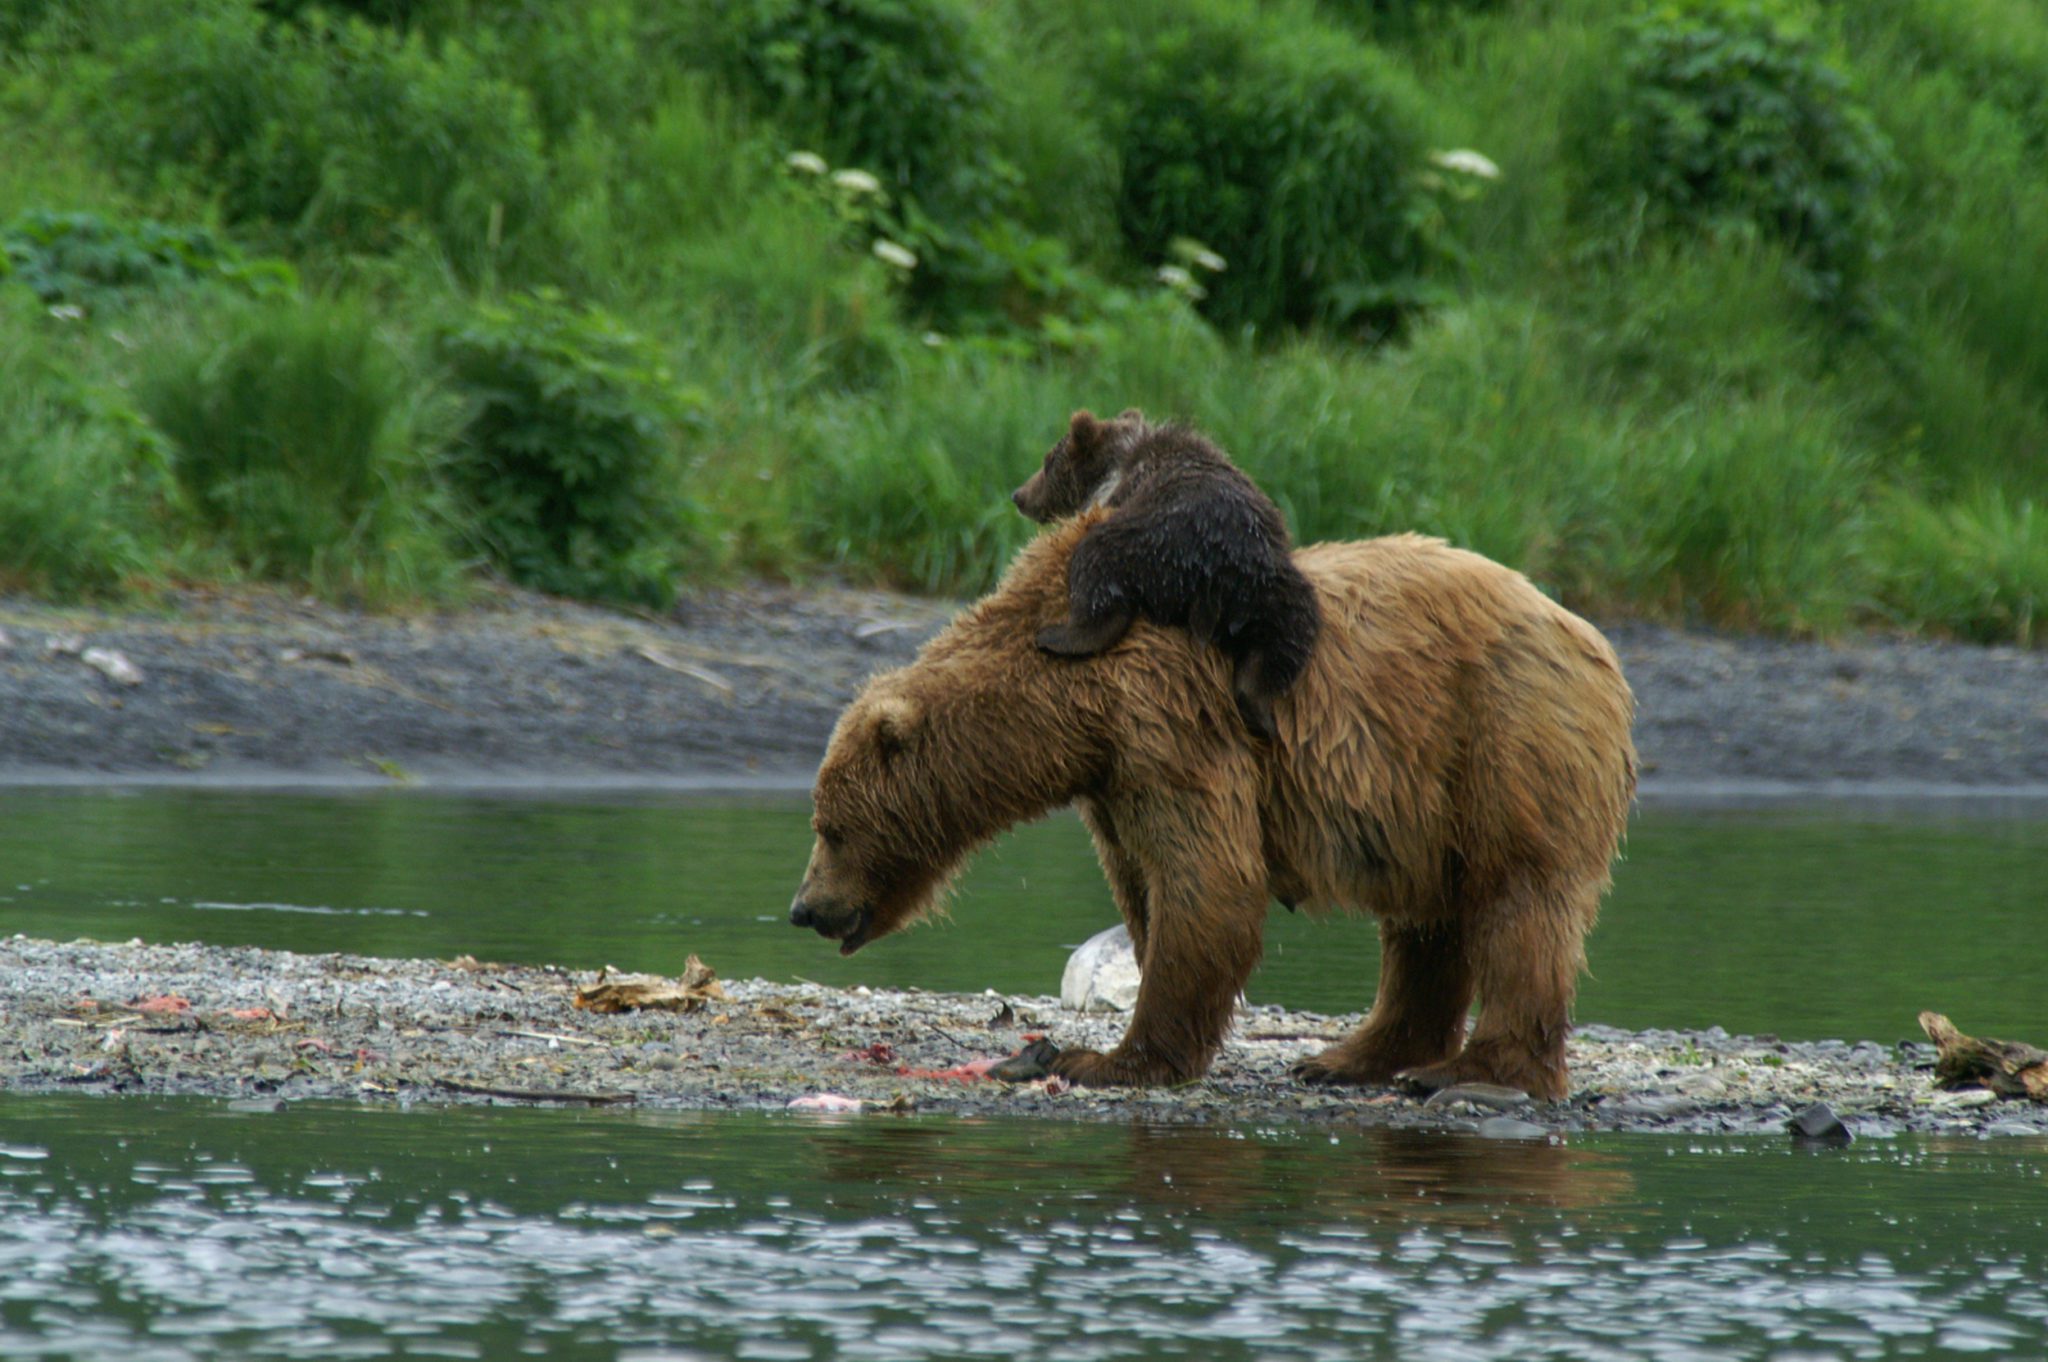 anchorage alaska bear tours